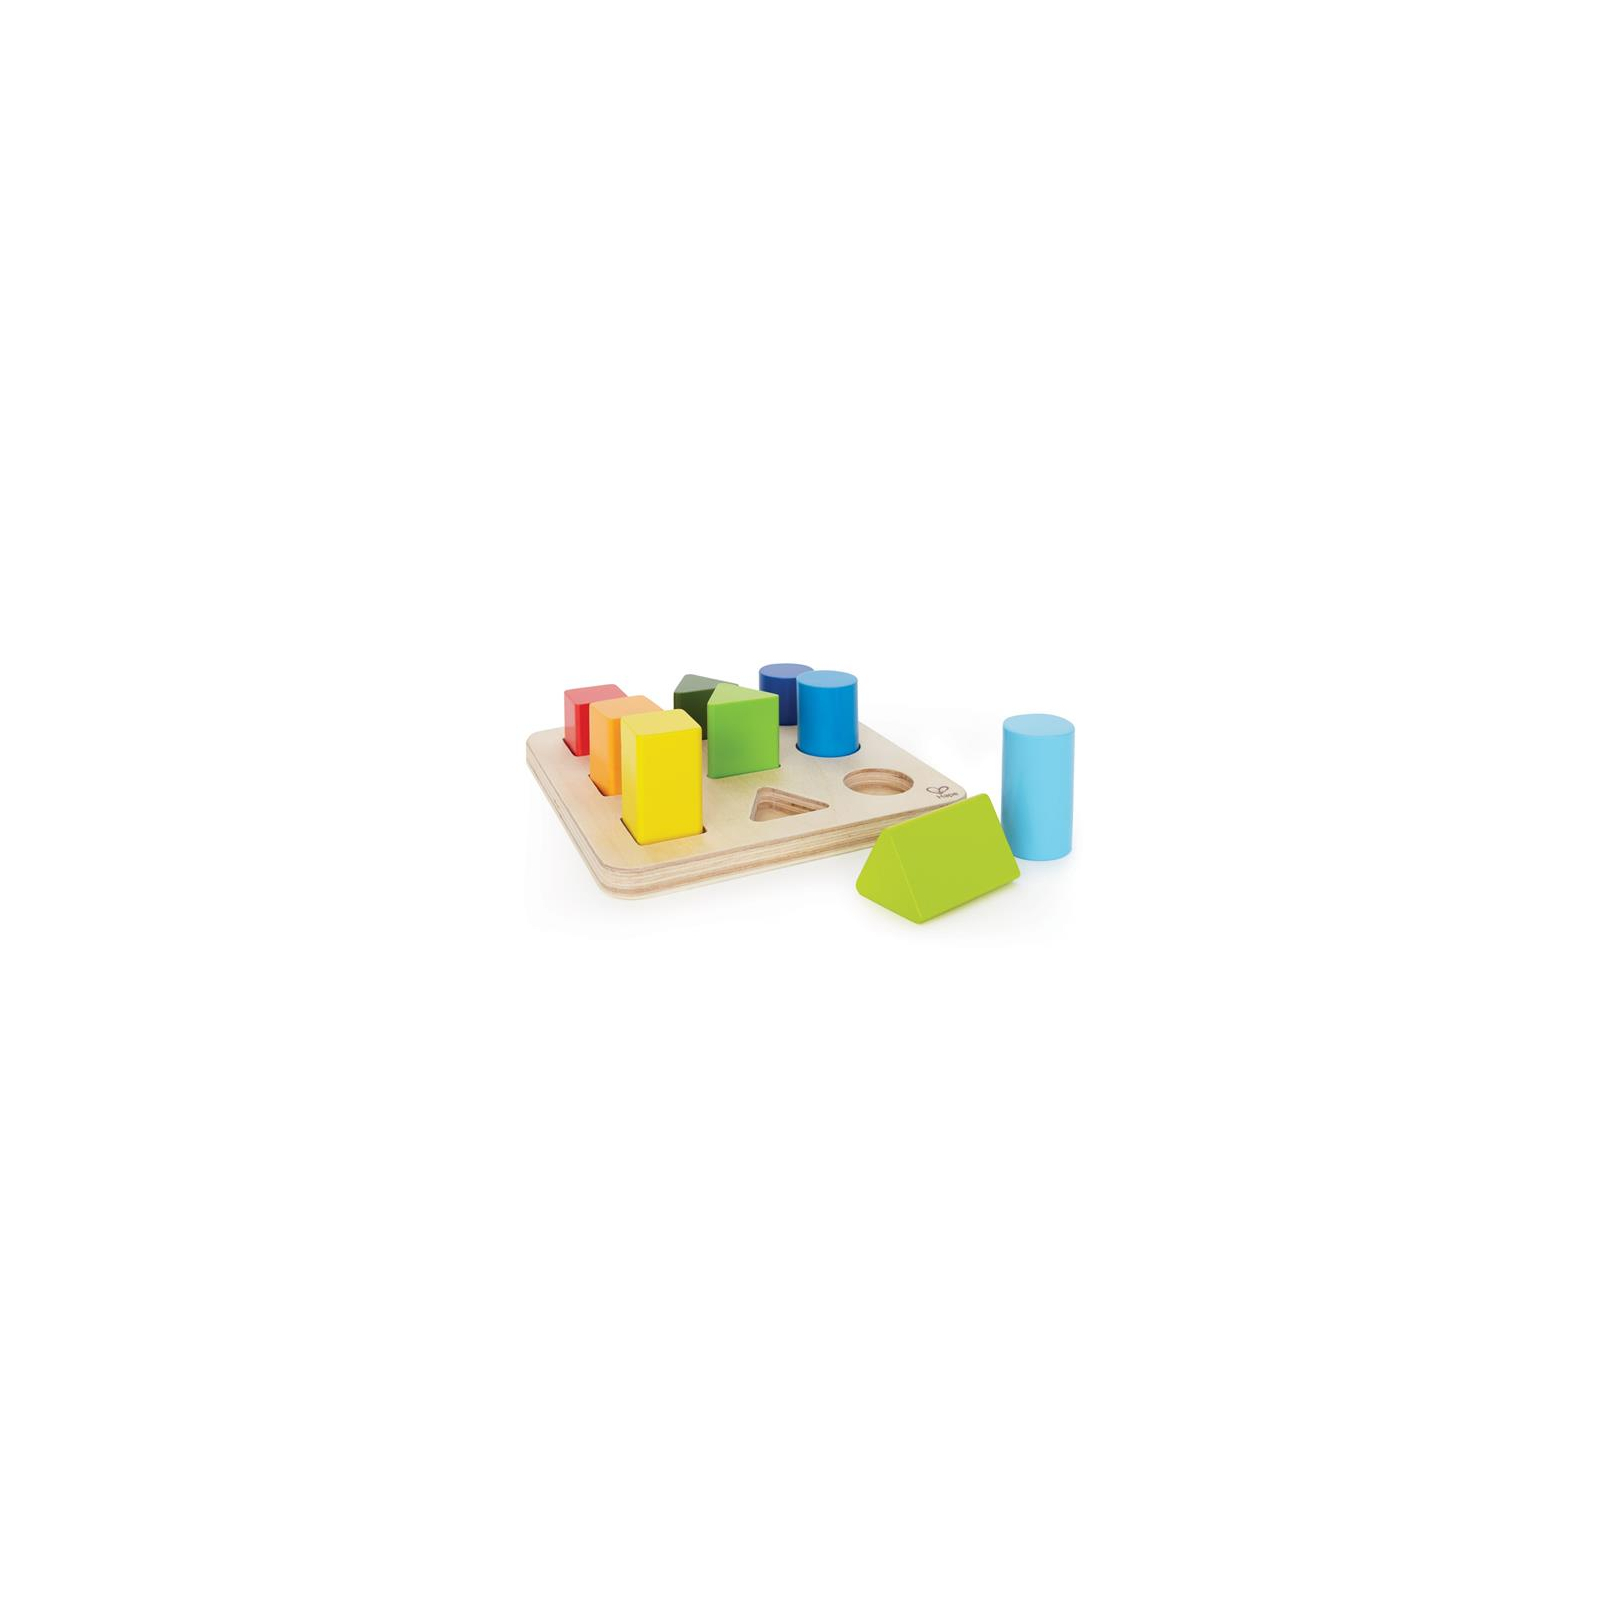 Развивающая игрушка Hape деревянный сортер Фигуры и размеры (E0426)